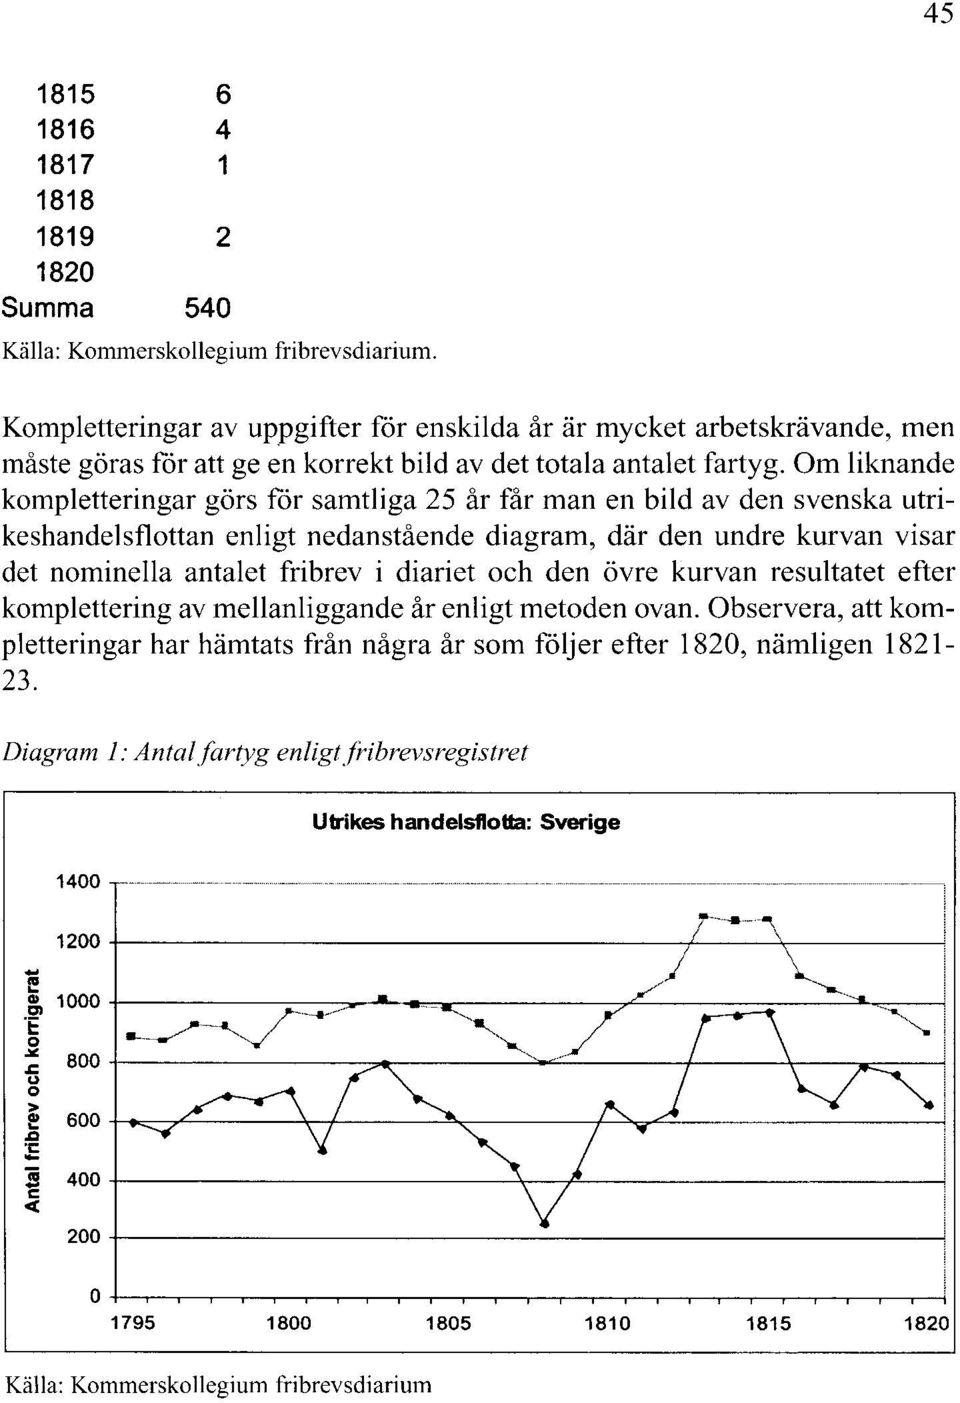 Om liknande kompletteringar görs för samtliga 25 år får man en bild av den svenska utrikeshandelsflottan enligt nedanstående diagram, där den undre kurvan visar det nominella antalet fribrev i